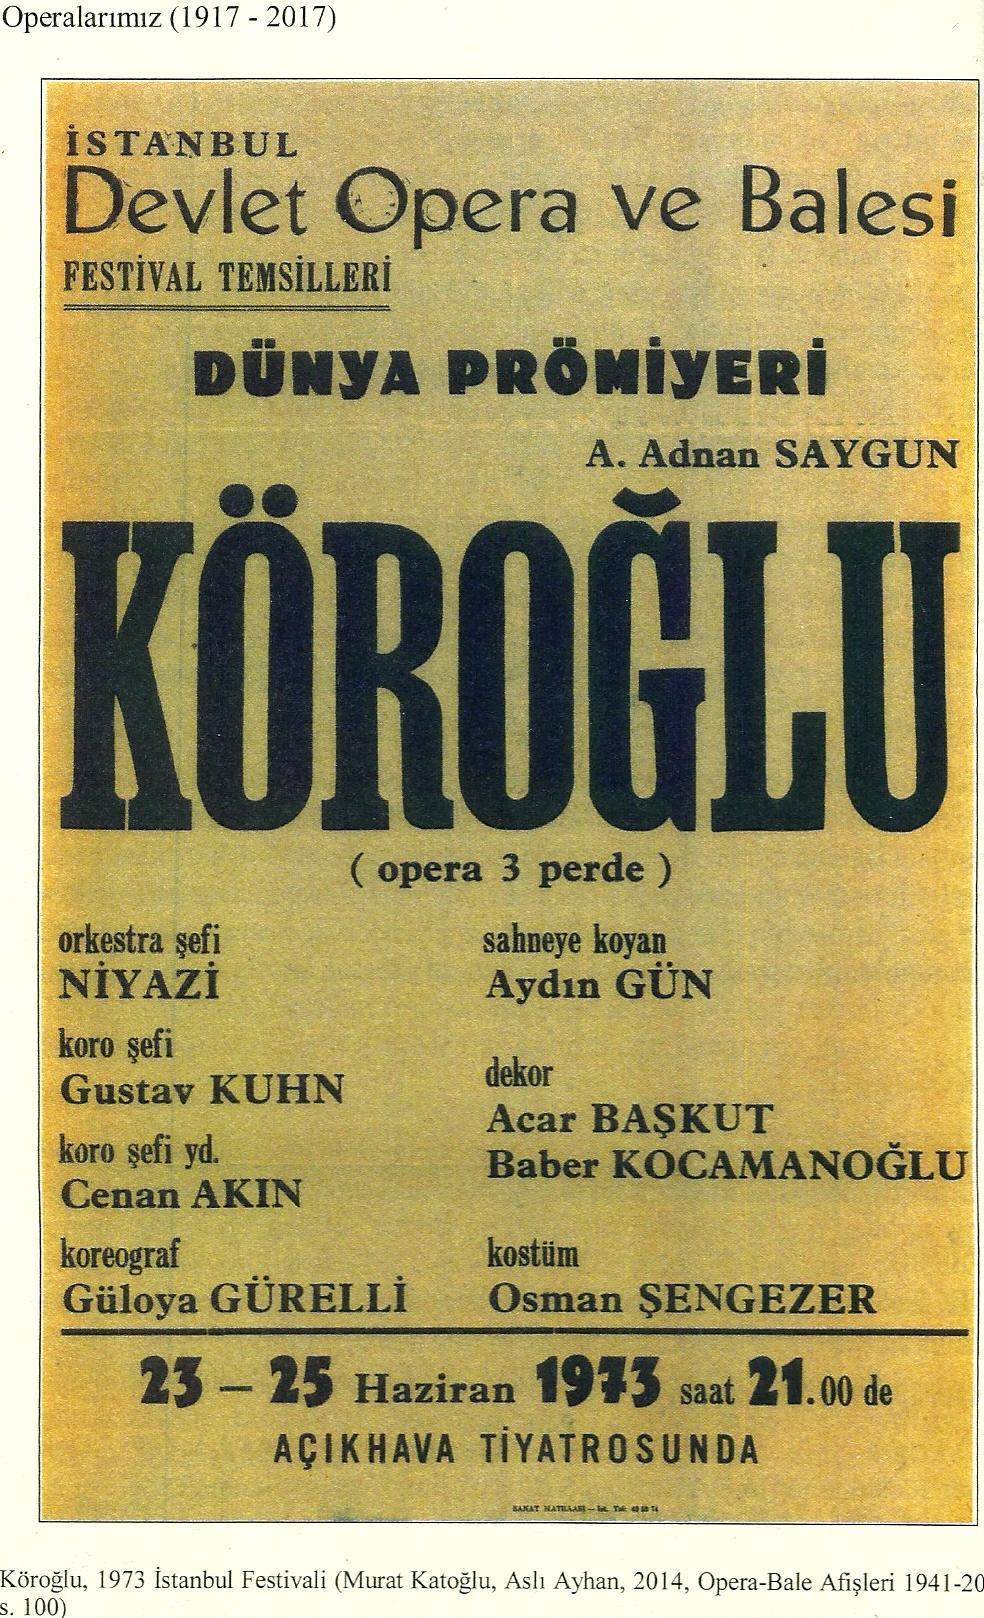 Halk edebiyatı araştırmacılarımız, Köroğlu için, on yedinci yüzyılda yaşamış bir Celali dir derler. Ama Azerbaycan edebiyatında da Köroğlu vardır.